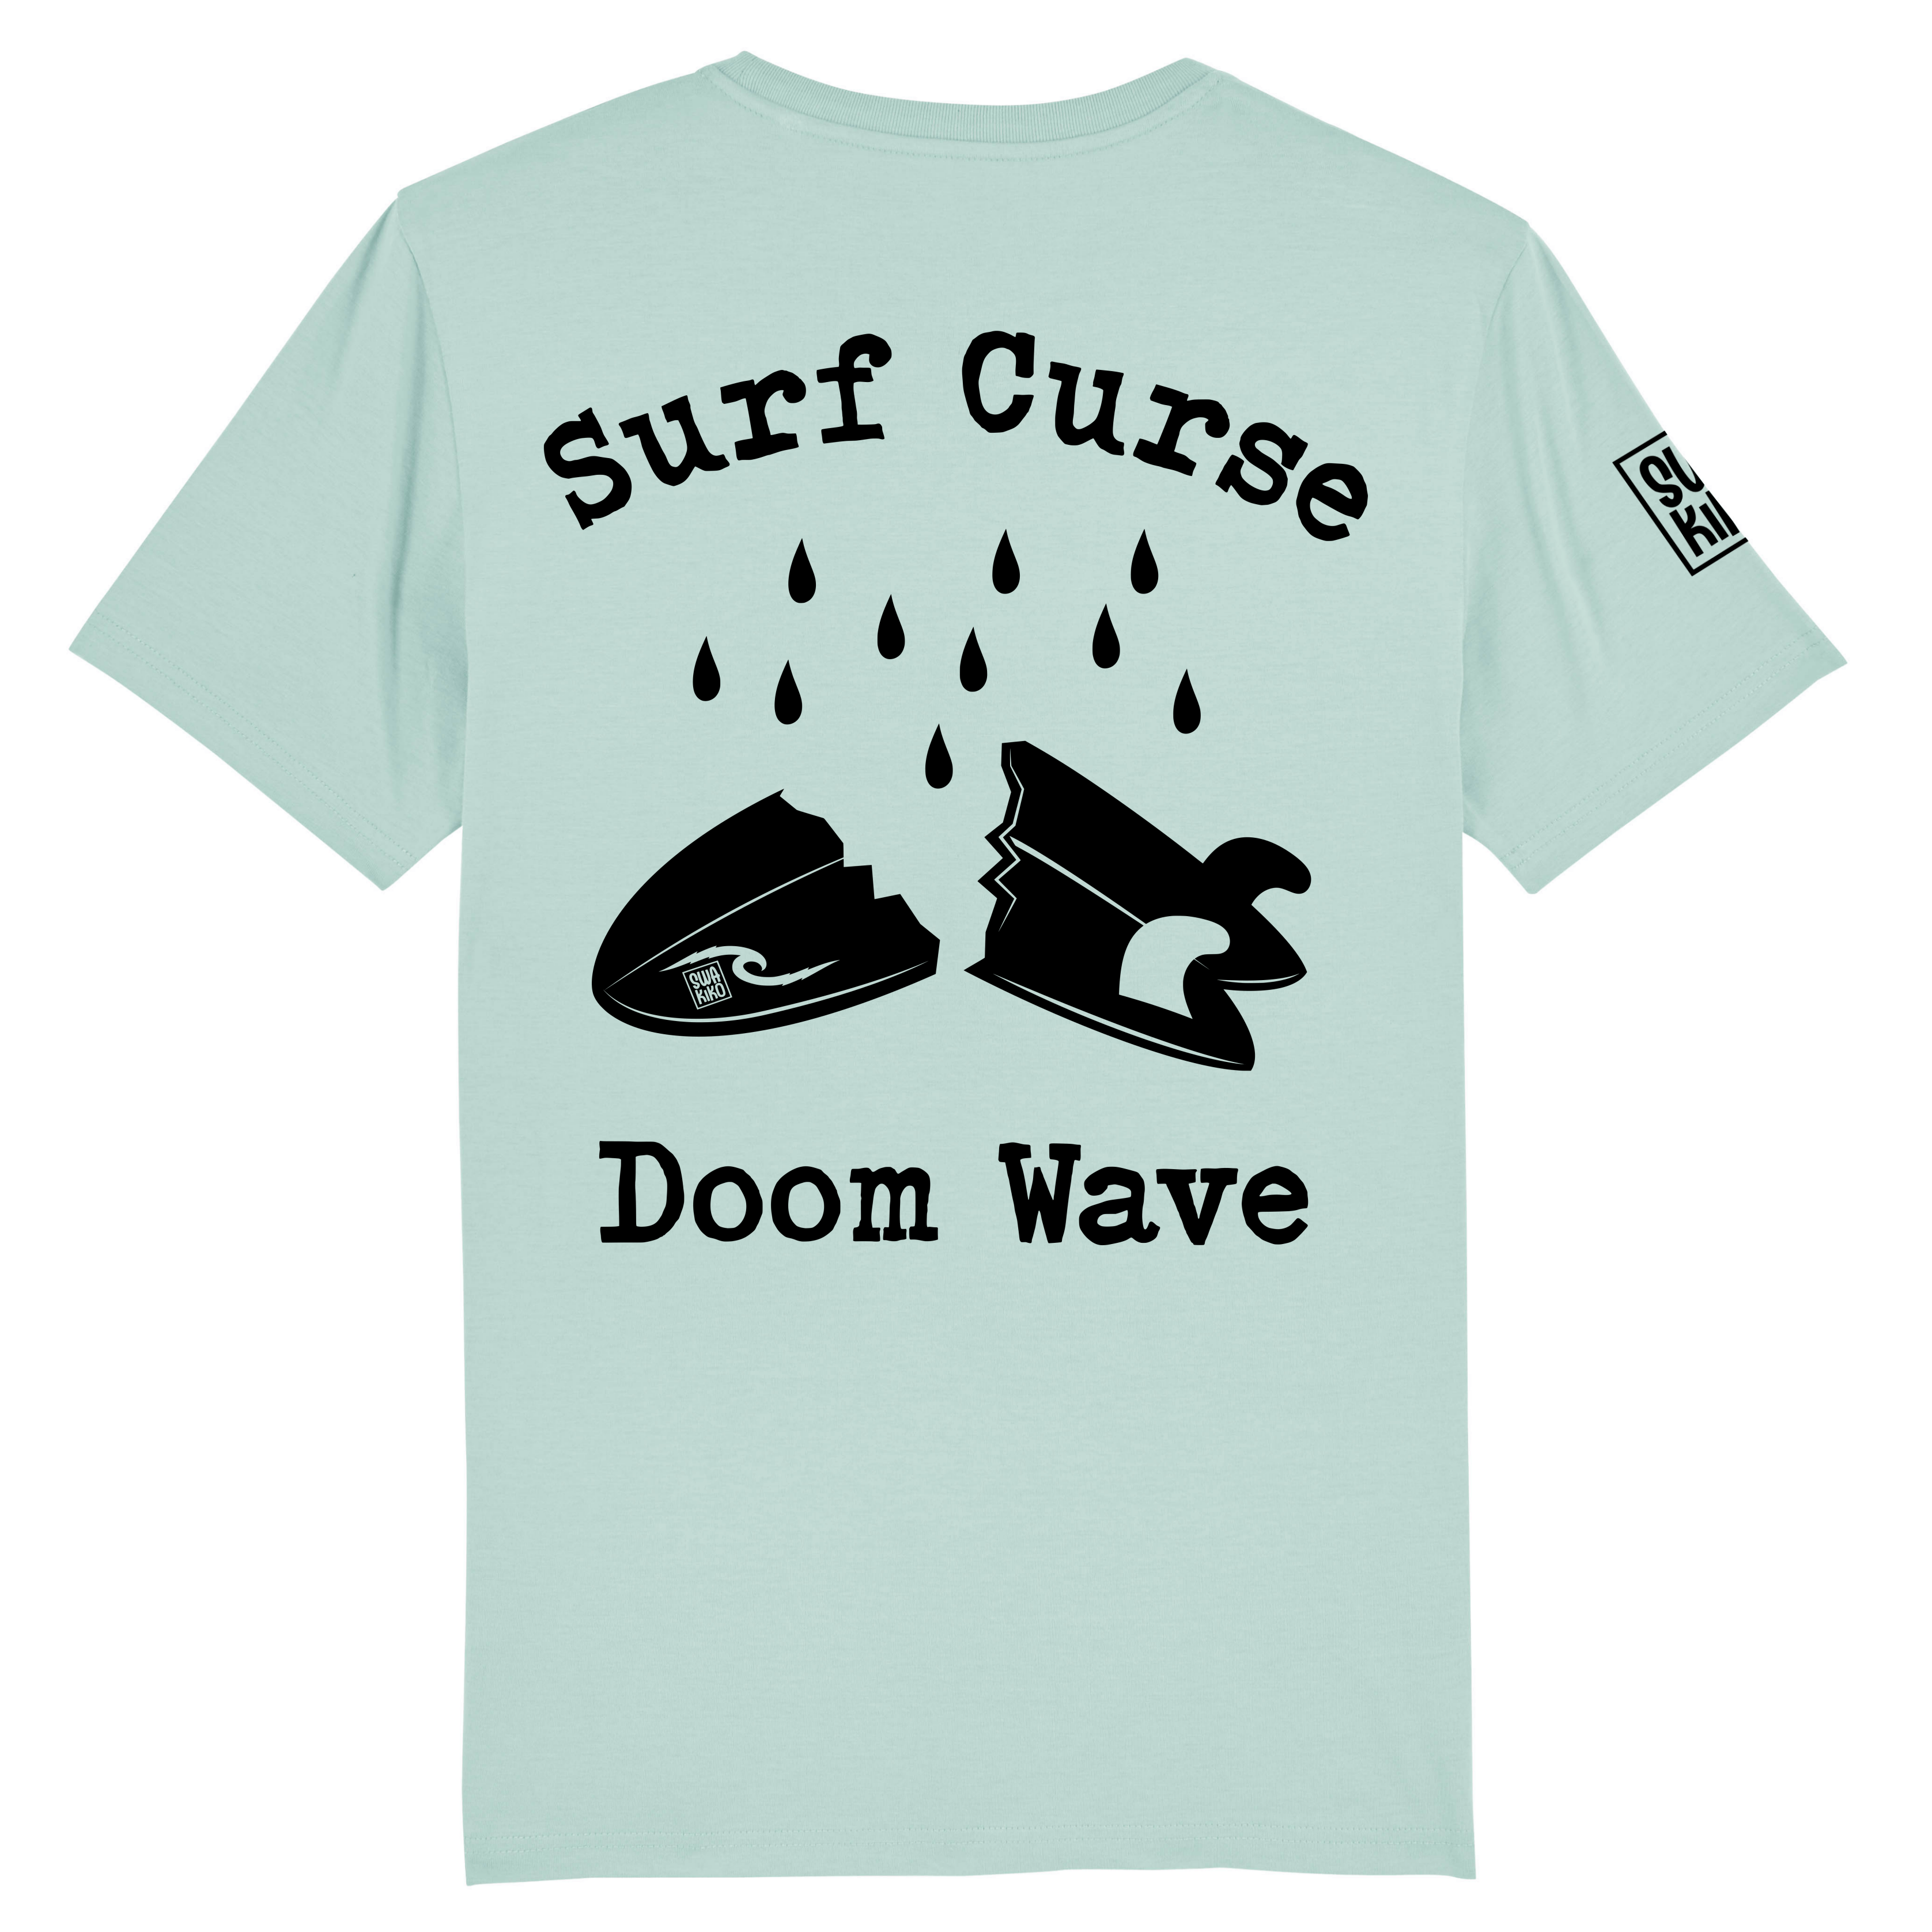 Turquoise Surf Curse T-shirt met artwork van een gebroken surfboard